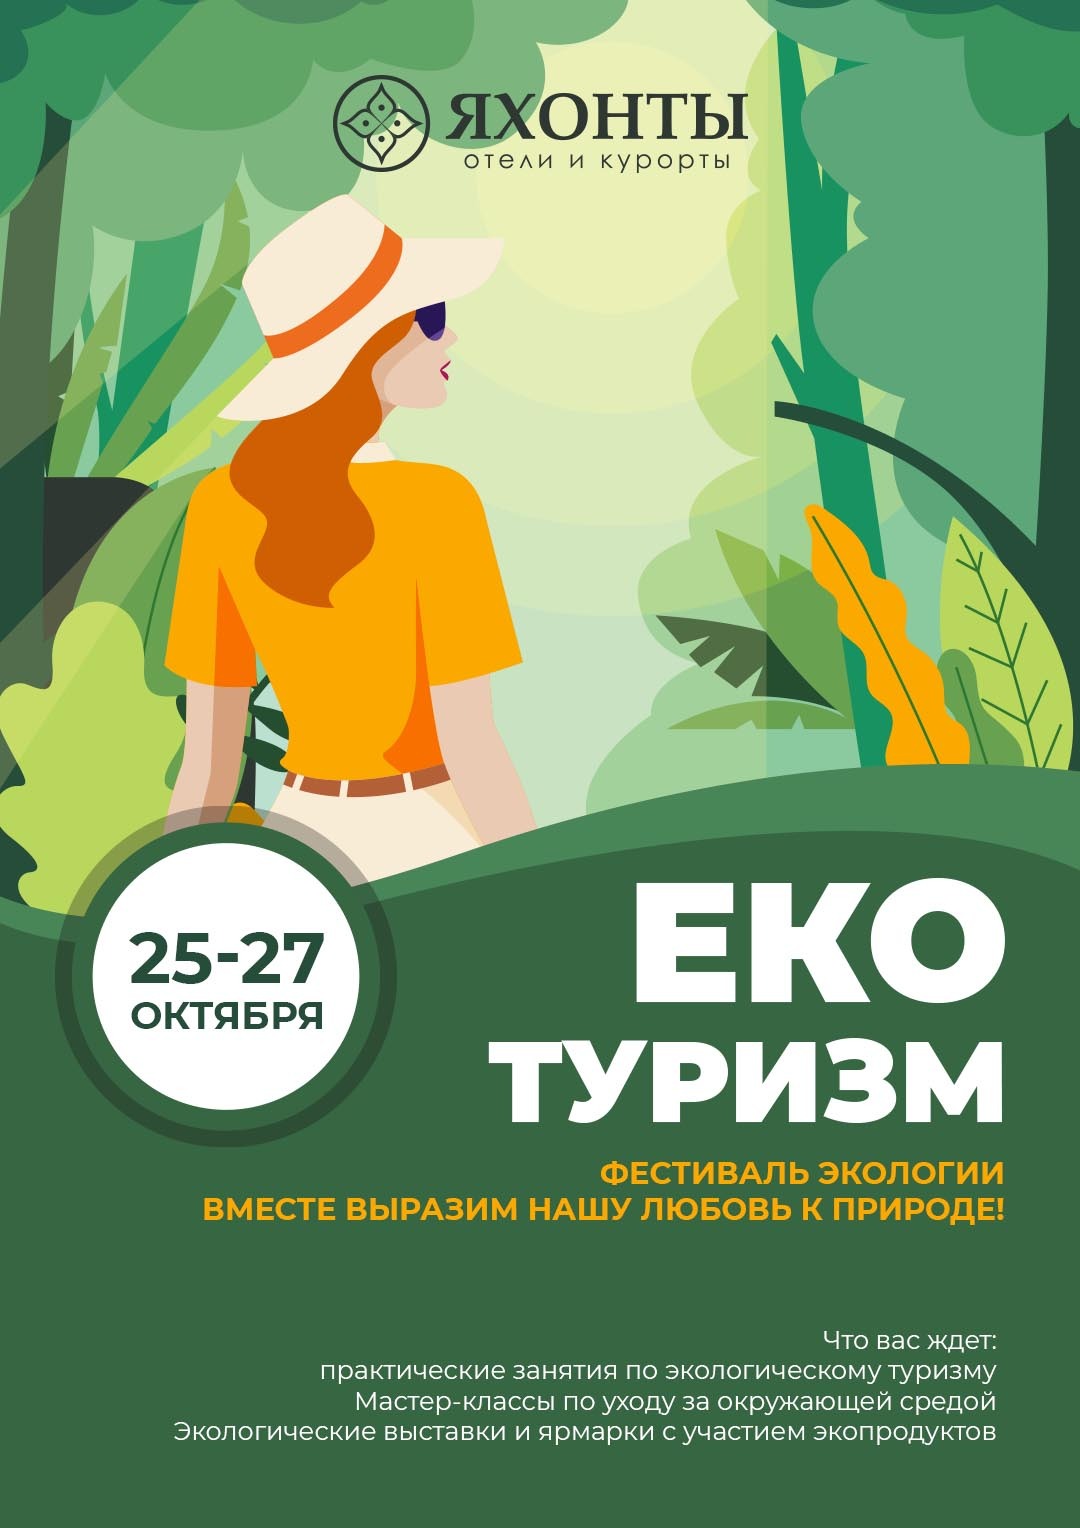 Эко туризм" Фестиваль экологии